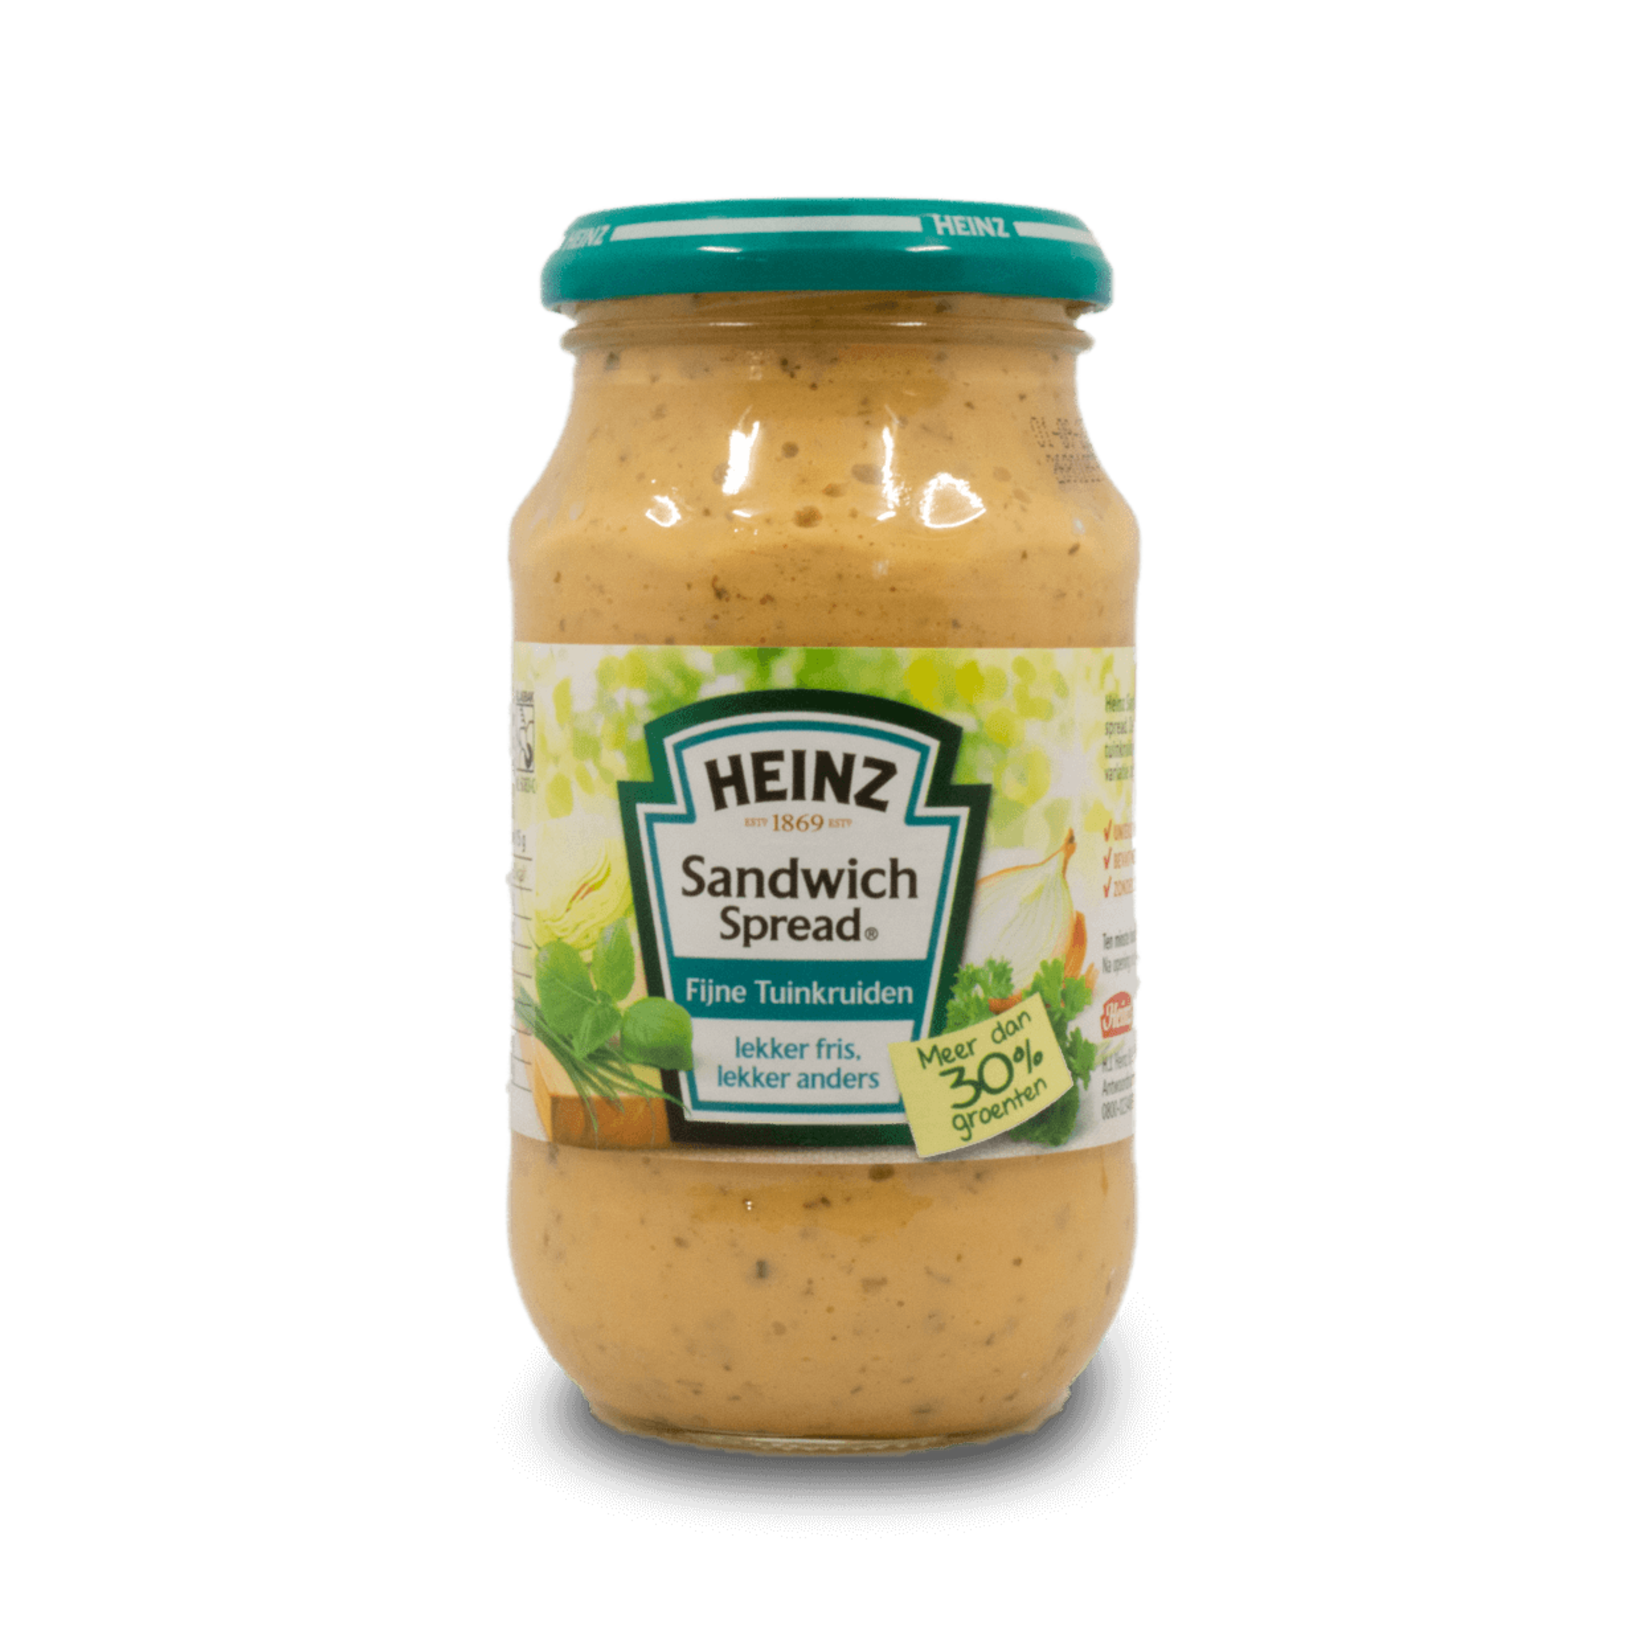 Heinz Heinz Sandwich Spread - Herb 300ml